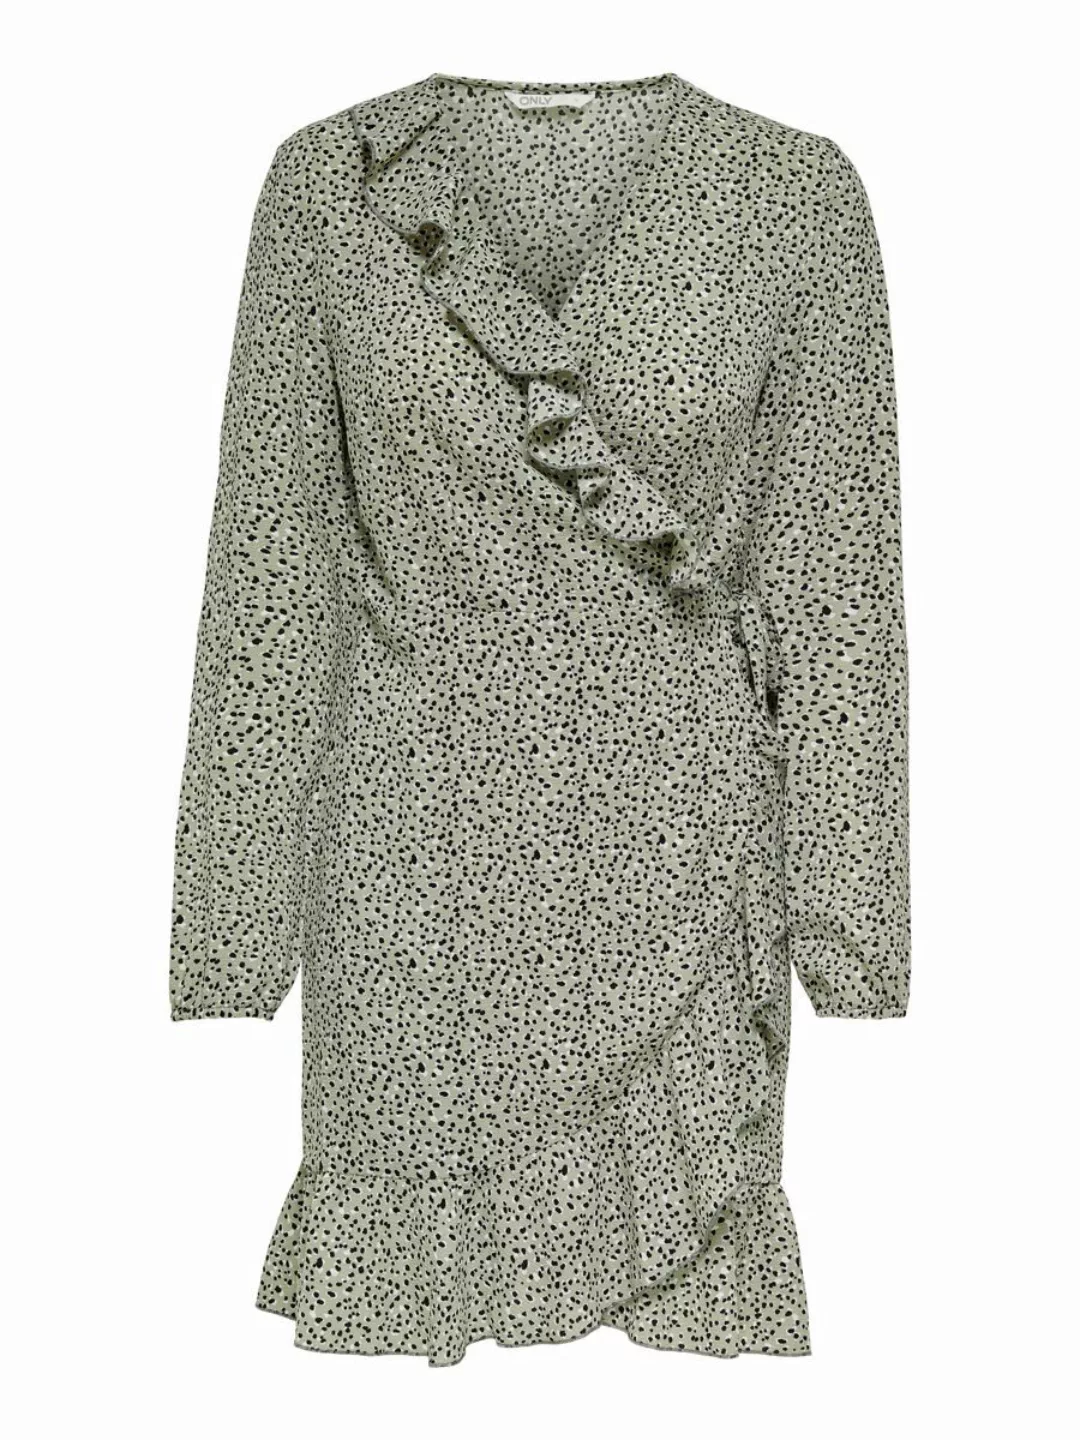 Only Carly Kurzes Kleid 38 Seagrass / Aop Multi Dot günstig online kaufen